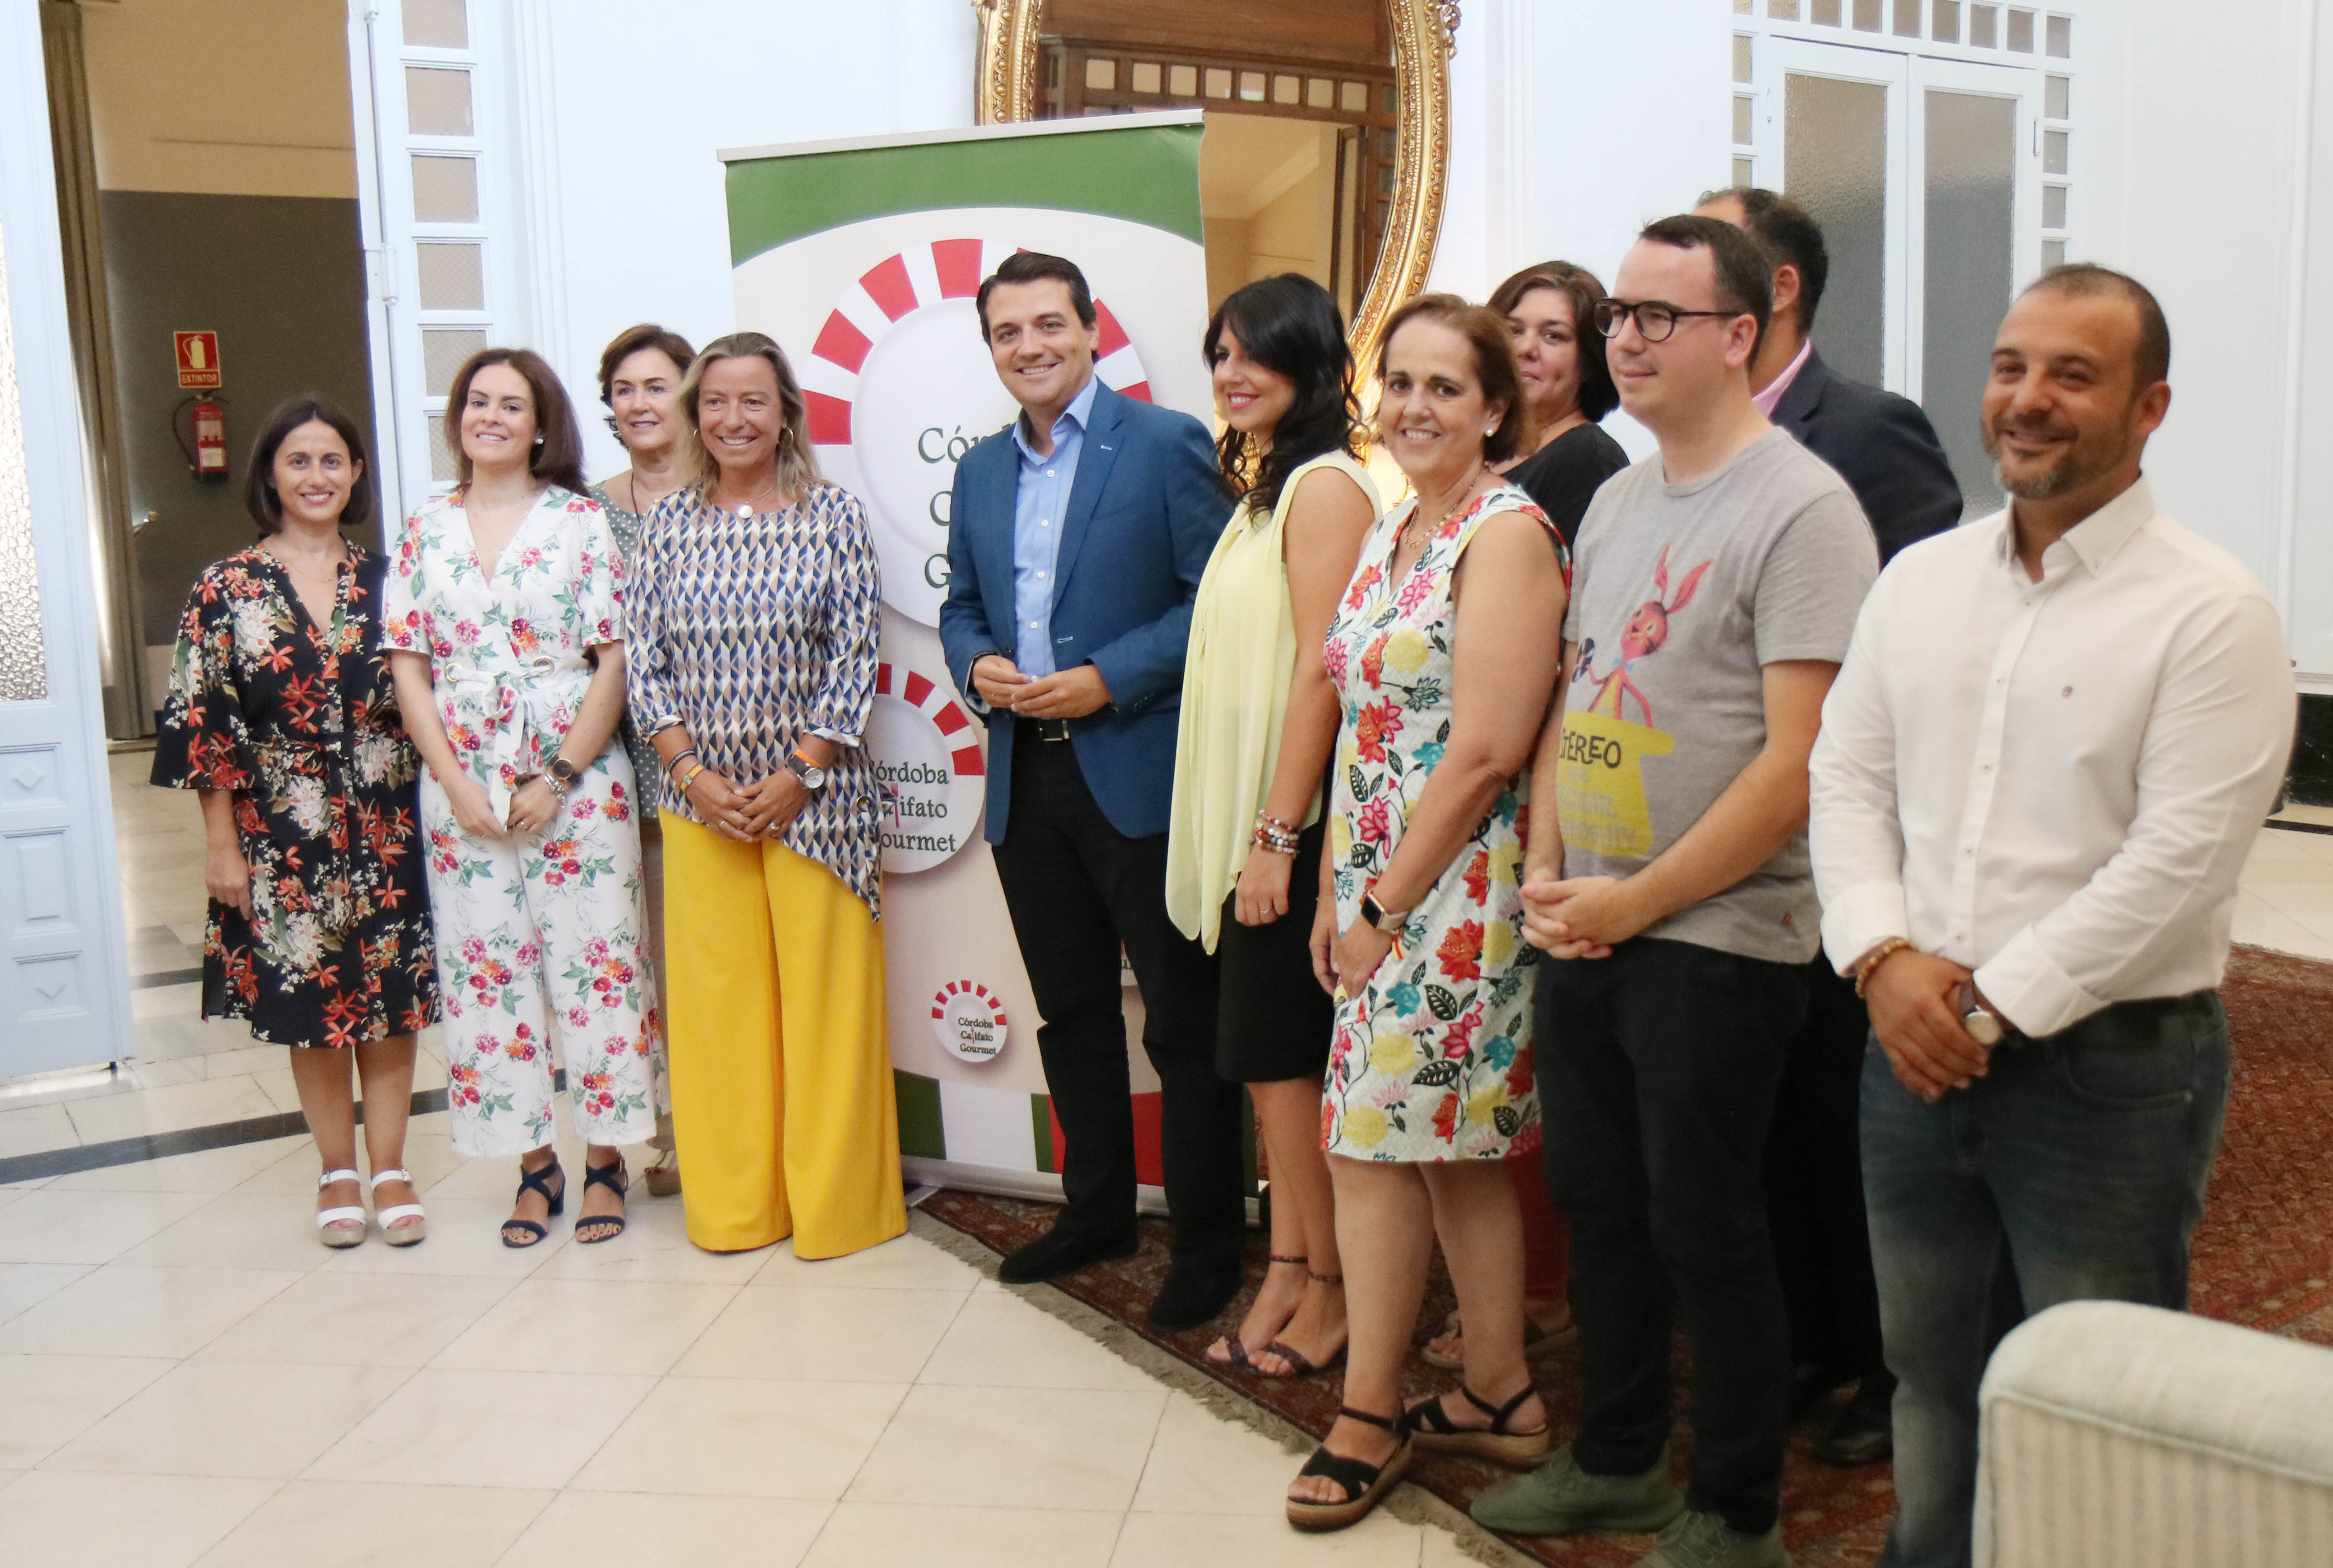 La sexta edición de Córdoba Califato Gourmet sitúa a la ciudad como referente de la gastronomía nacional